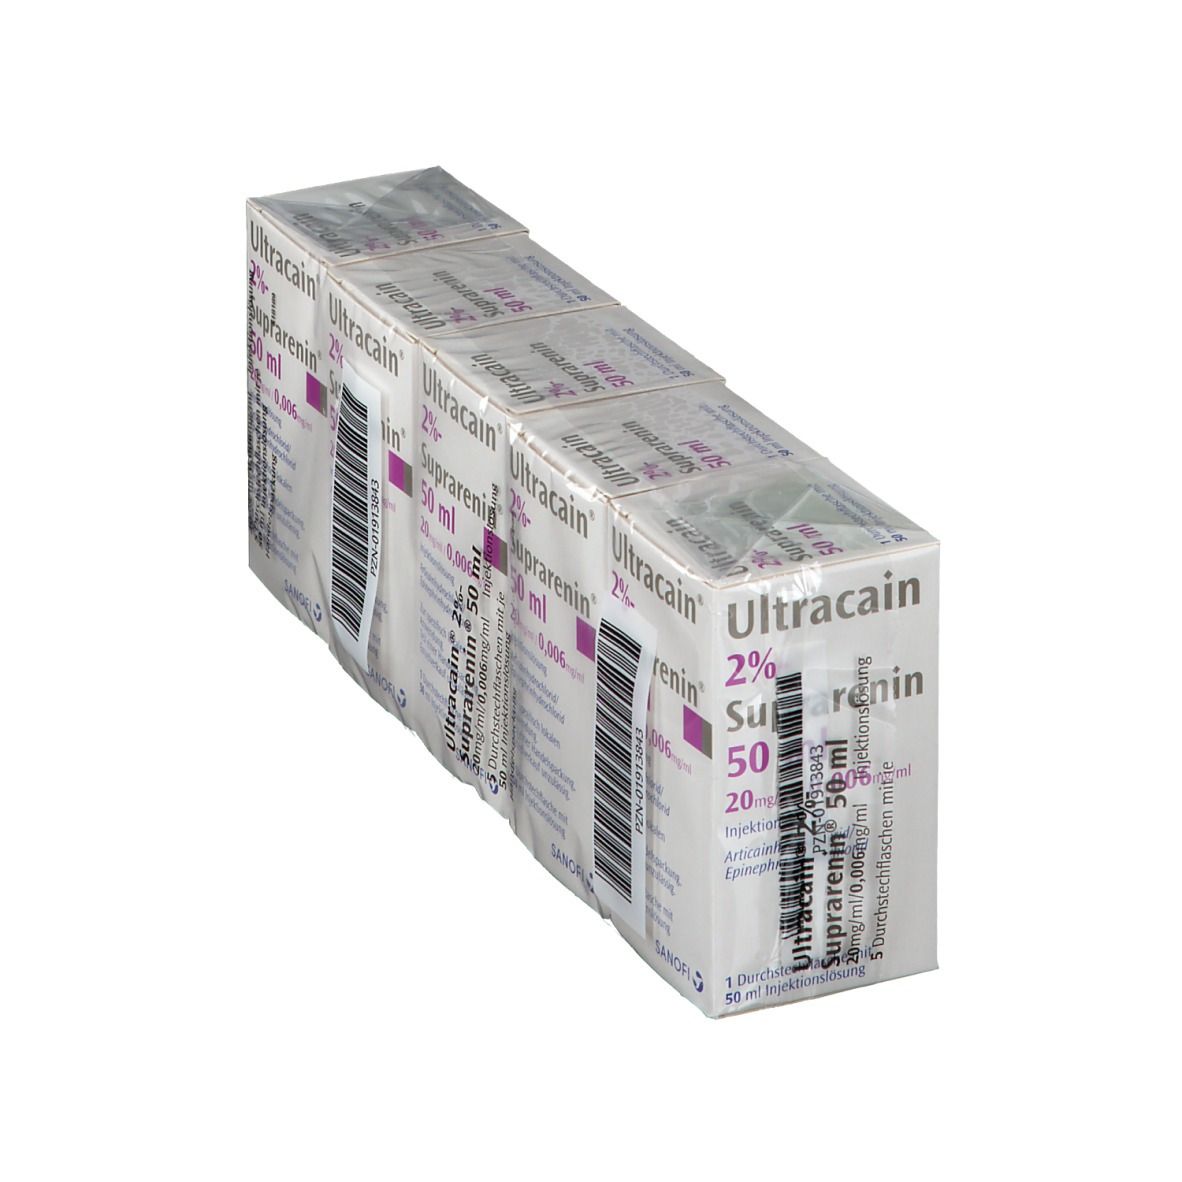 Ultracain® 2%-Suprarenin® 50 ml